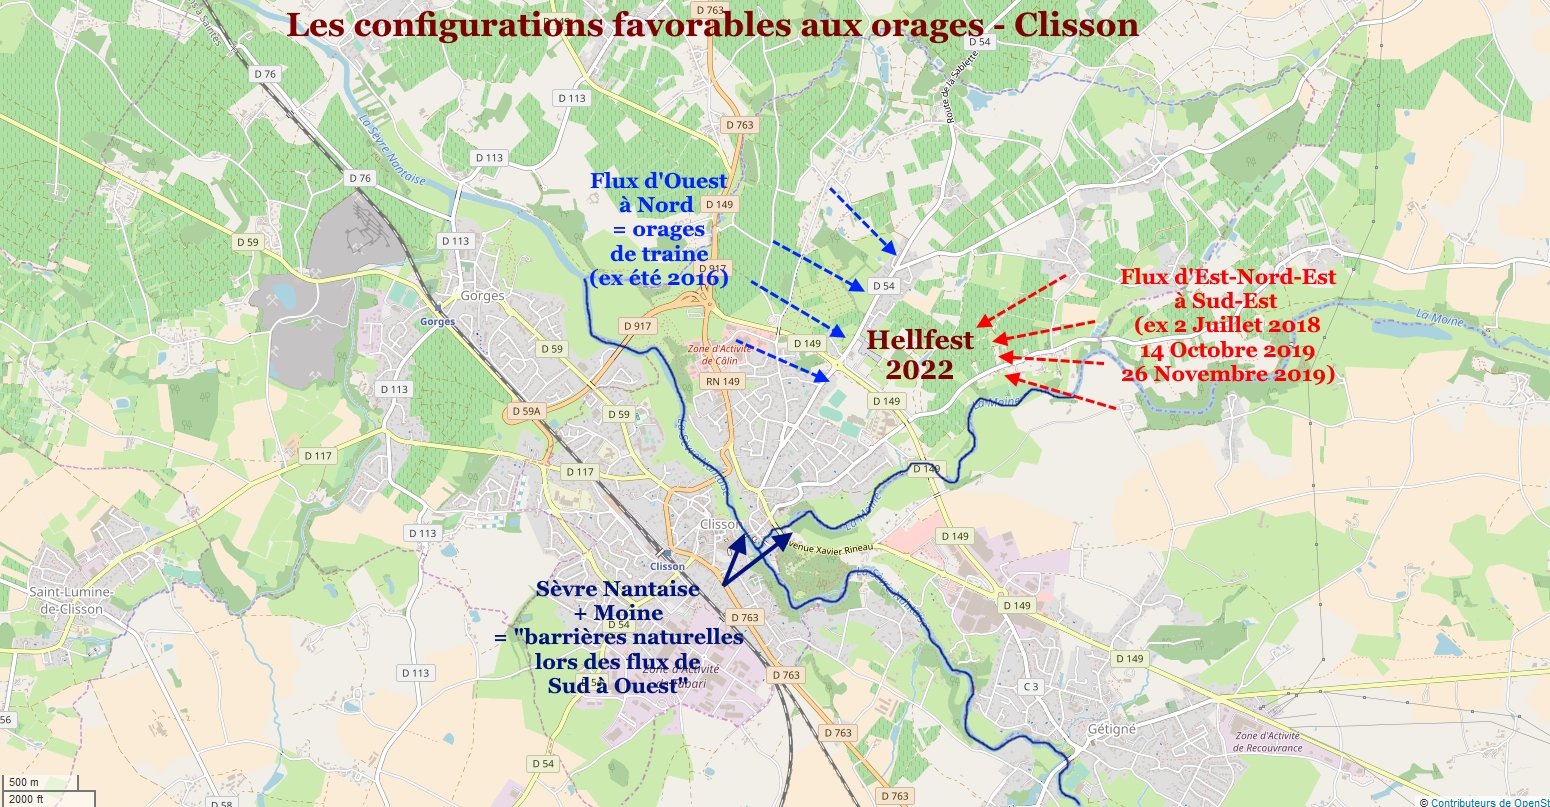 Probabilités orages configuration Clisson 2022